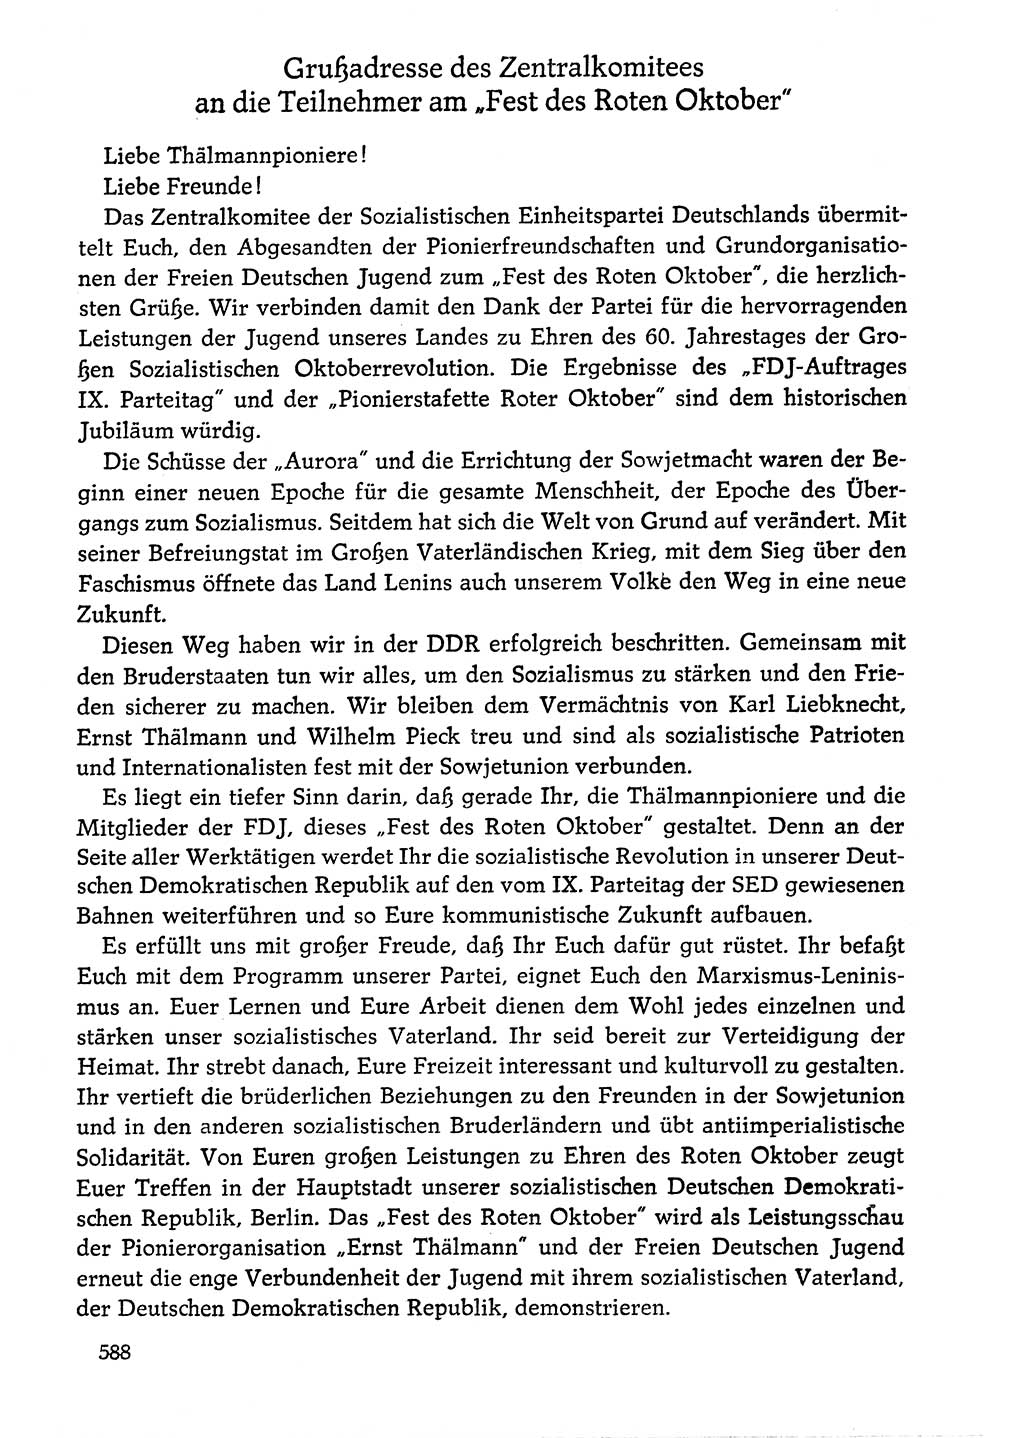 Dokumente der Sozialistischen Einheitspartei Deutschlands (SED) [Deutsche Demokratische Republik (DDR)] 1976-1977, Seite 588 (Dok. SED DDR 1976-1977, S. 588)